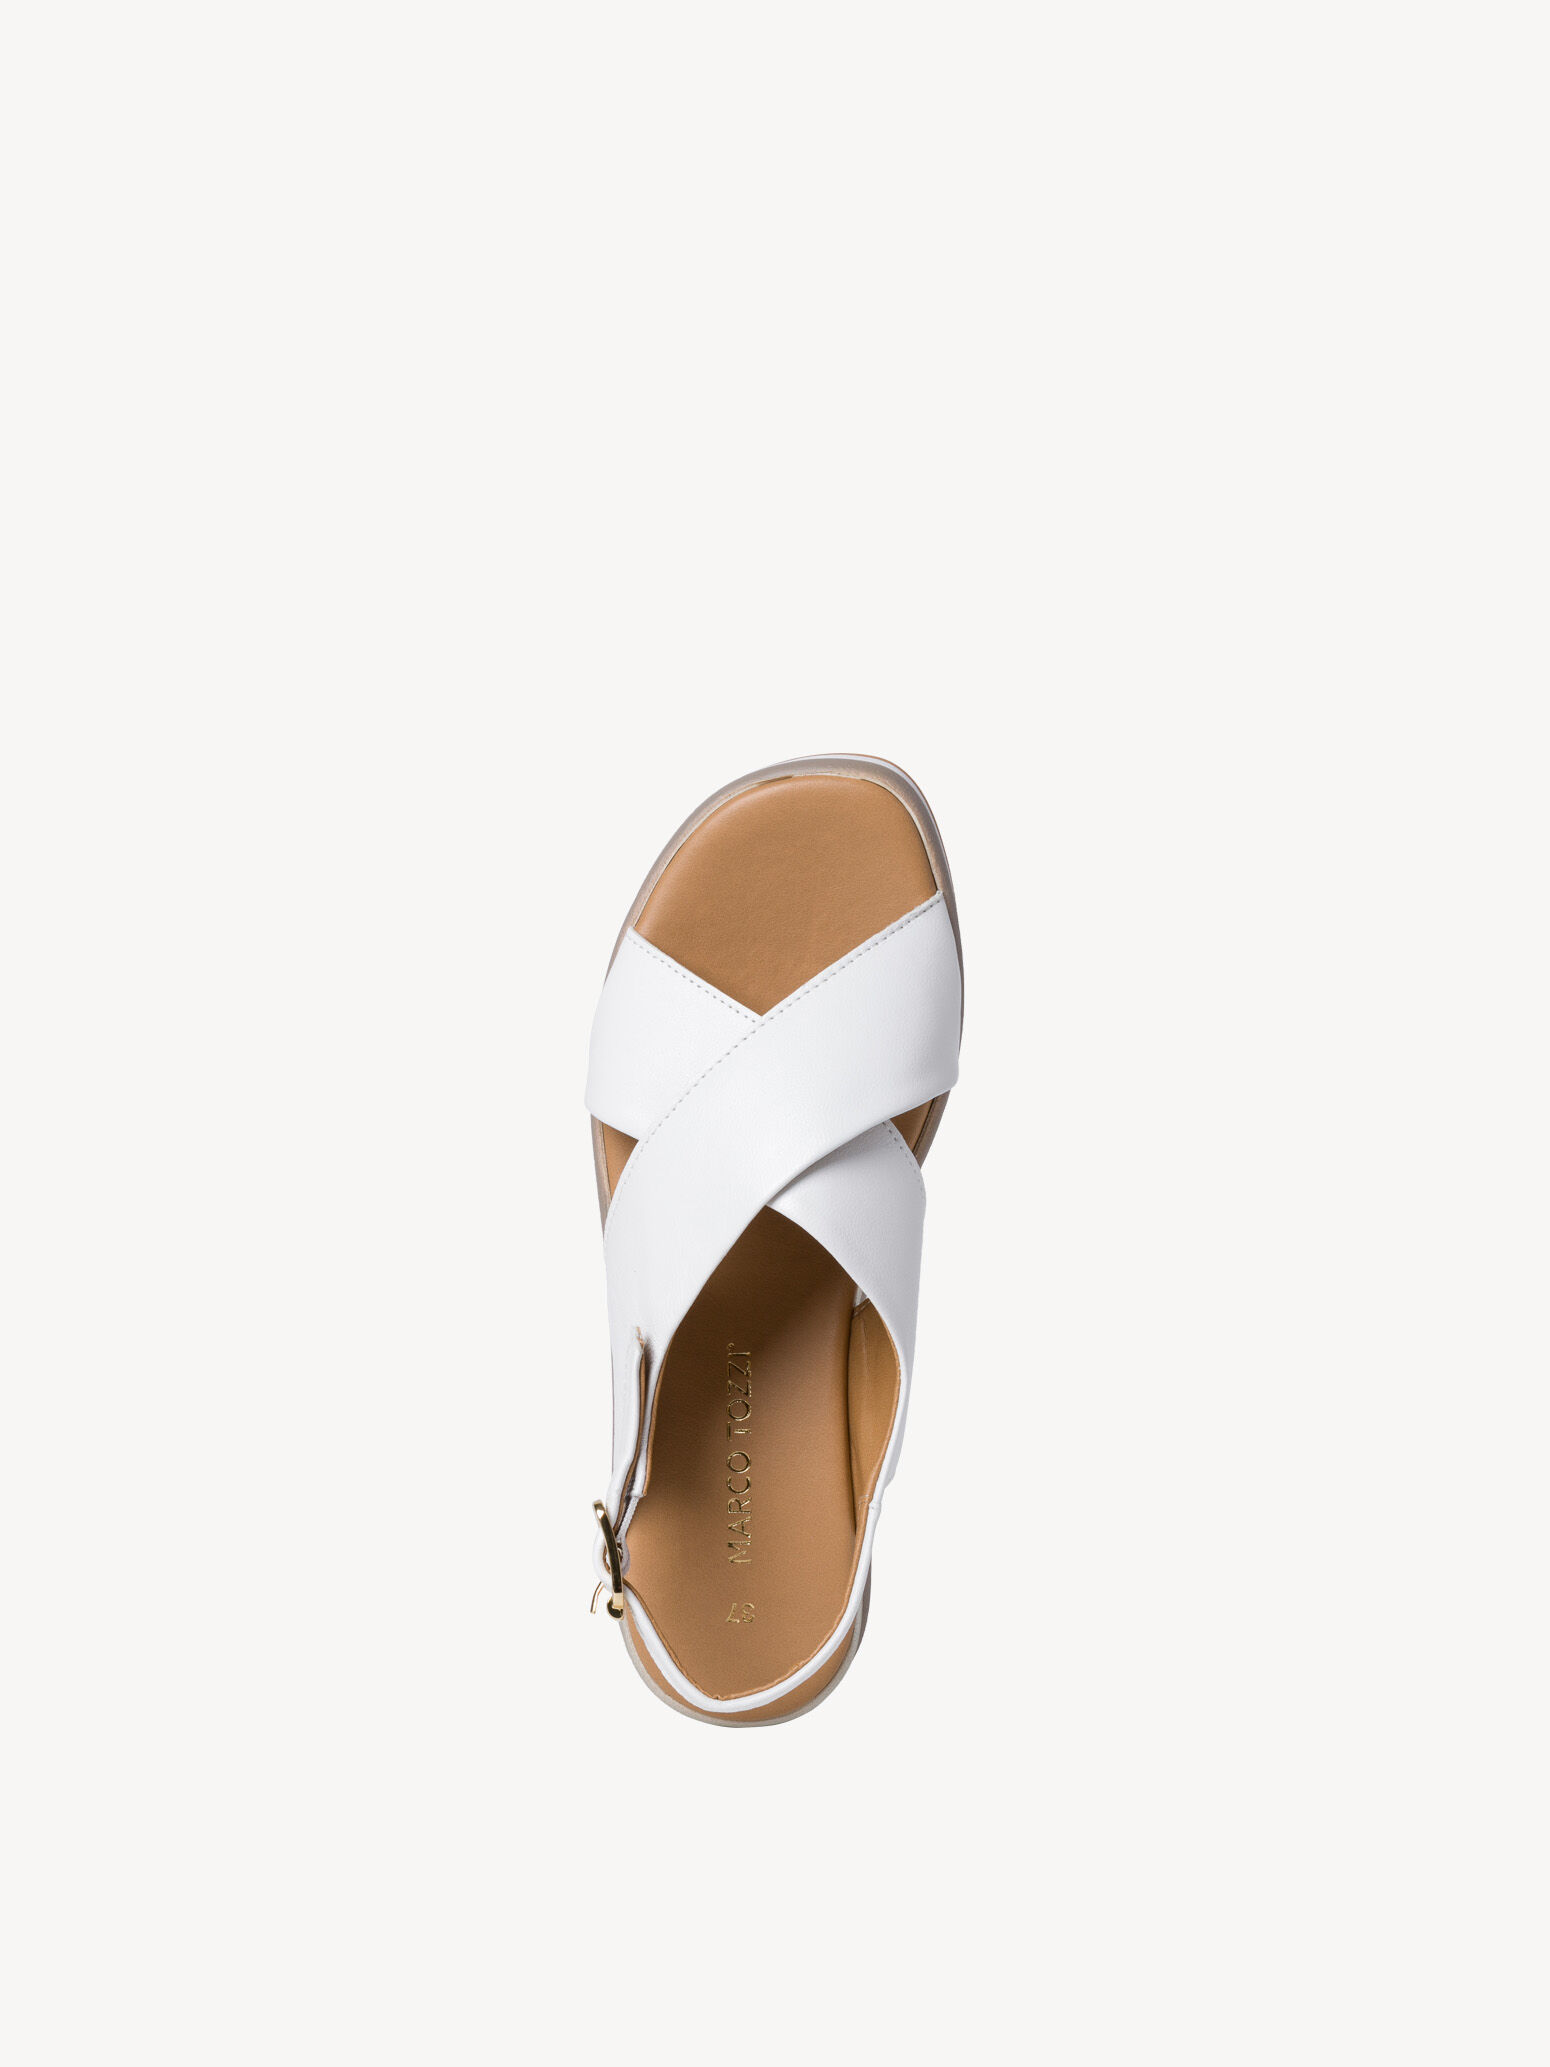 Leather Heeled sandal 2-2-28354-28: Buy Tozzi online!